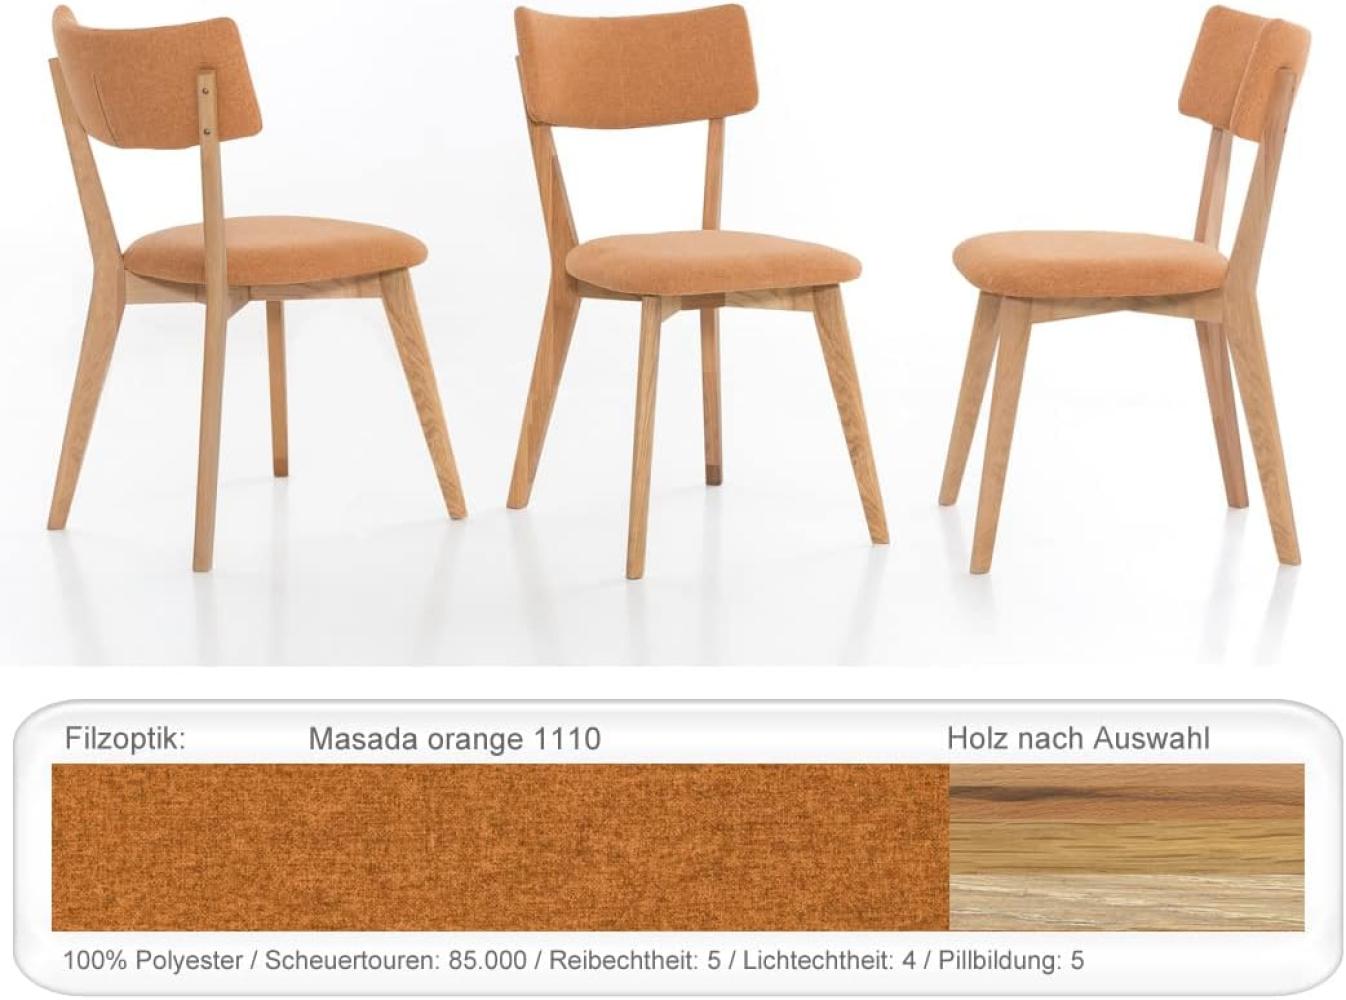 6x Holzstuhl Norina 32 Polsterstuhl Esszimmerstuhl Küchenstuhl Variant Eiche natur geölt, Masada orange Bild 1